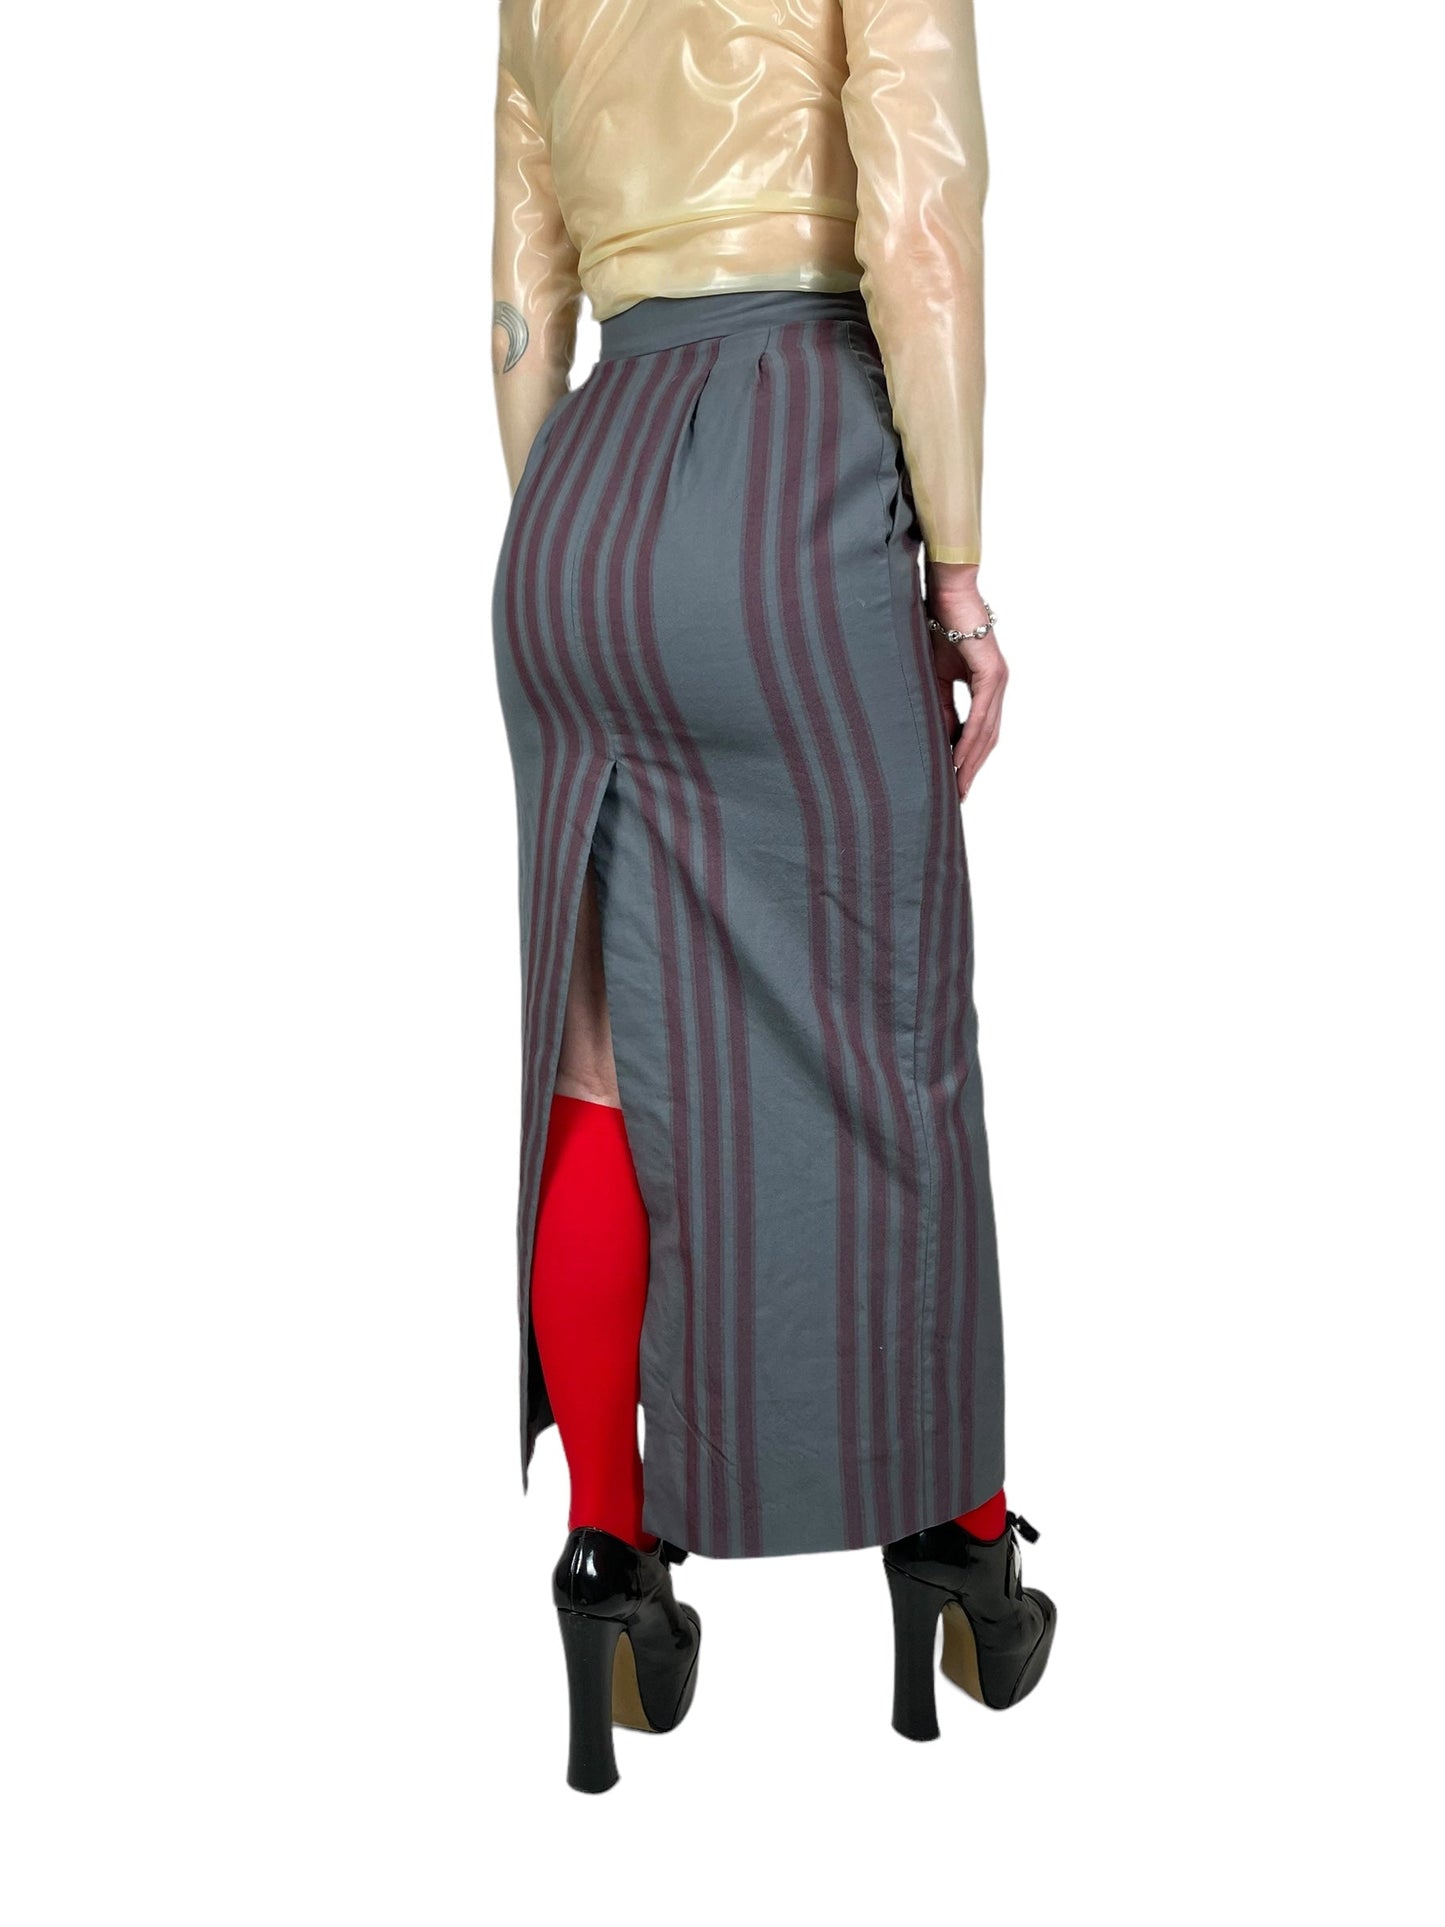 2020 Vivienne Westwood pencil skirt